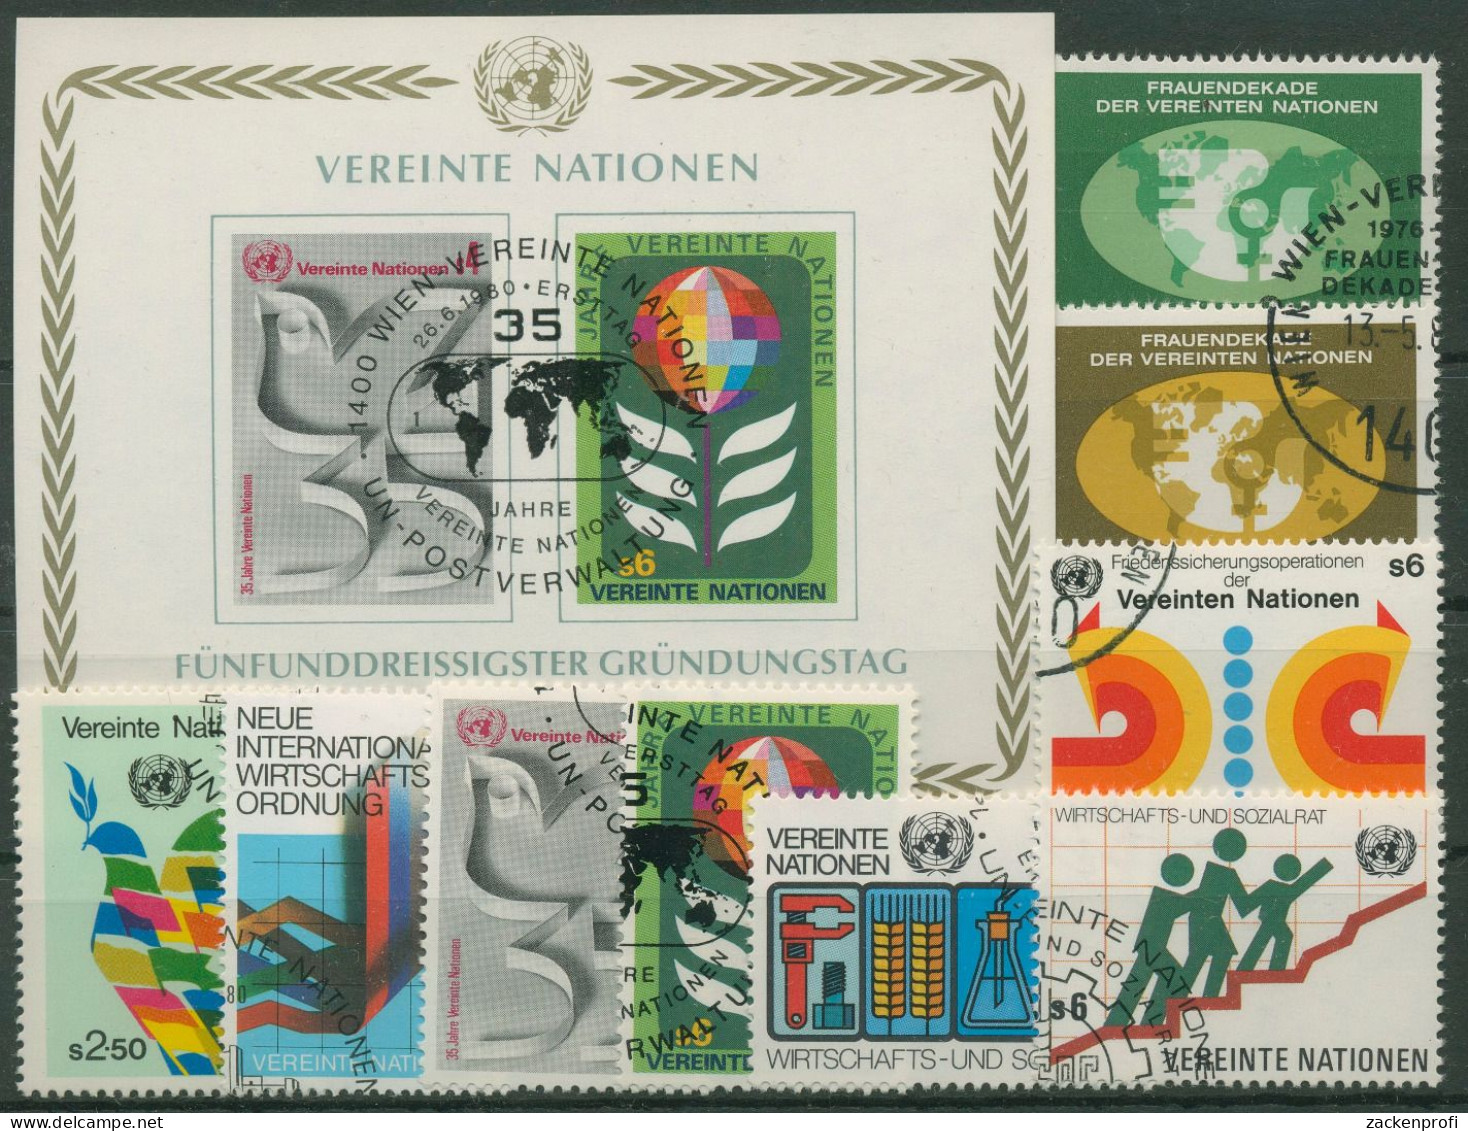 UNO Wien Jahrgang 1980 Komplett Gestempelt (G14482) - Usados